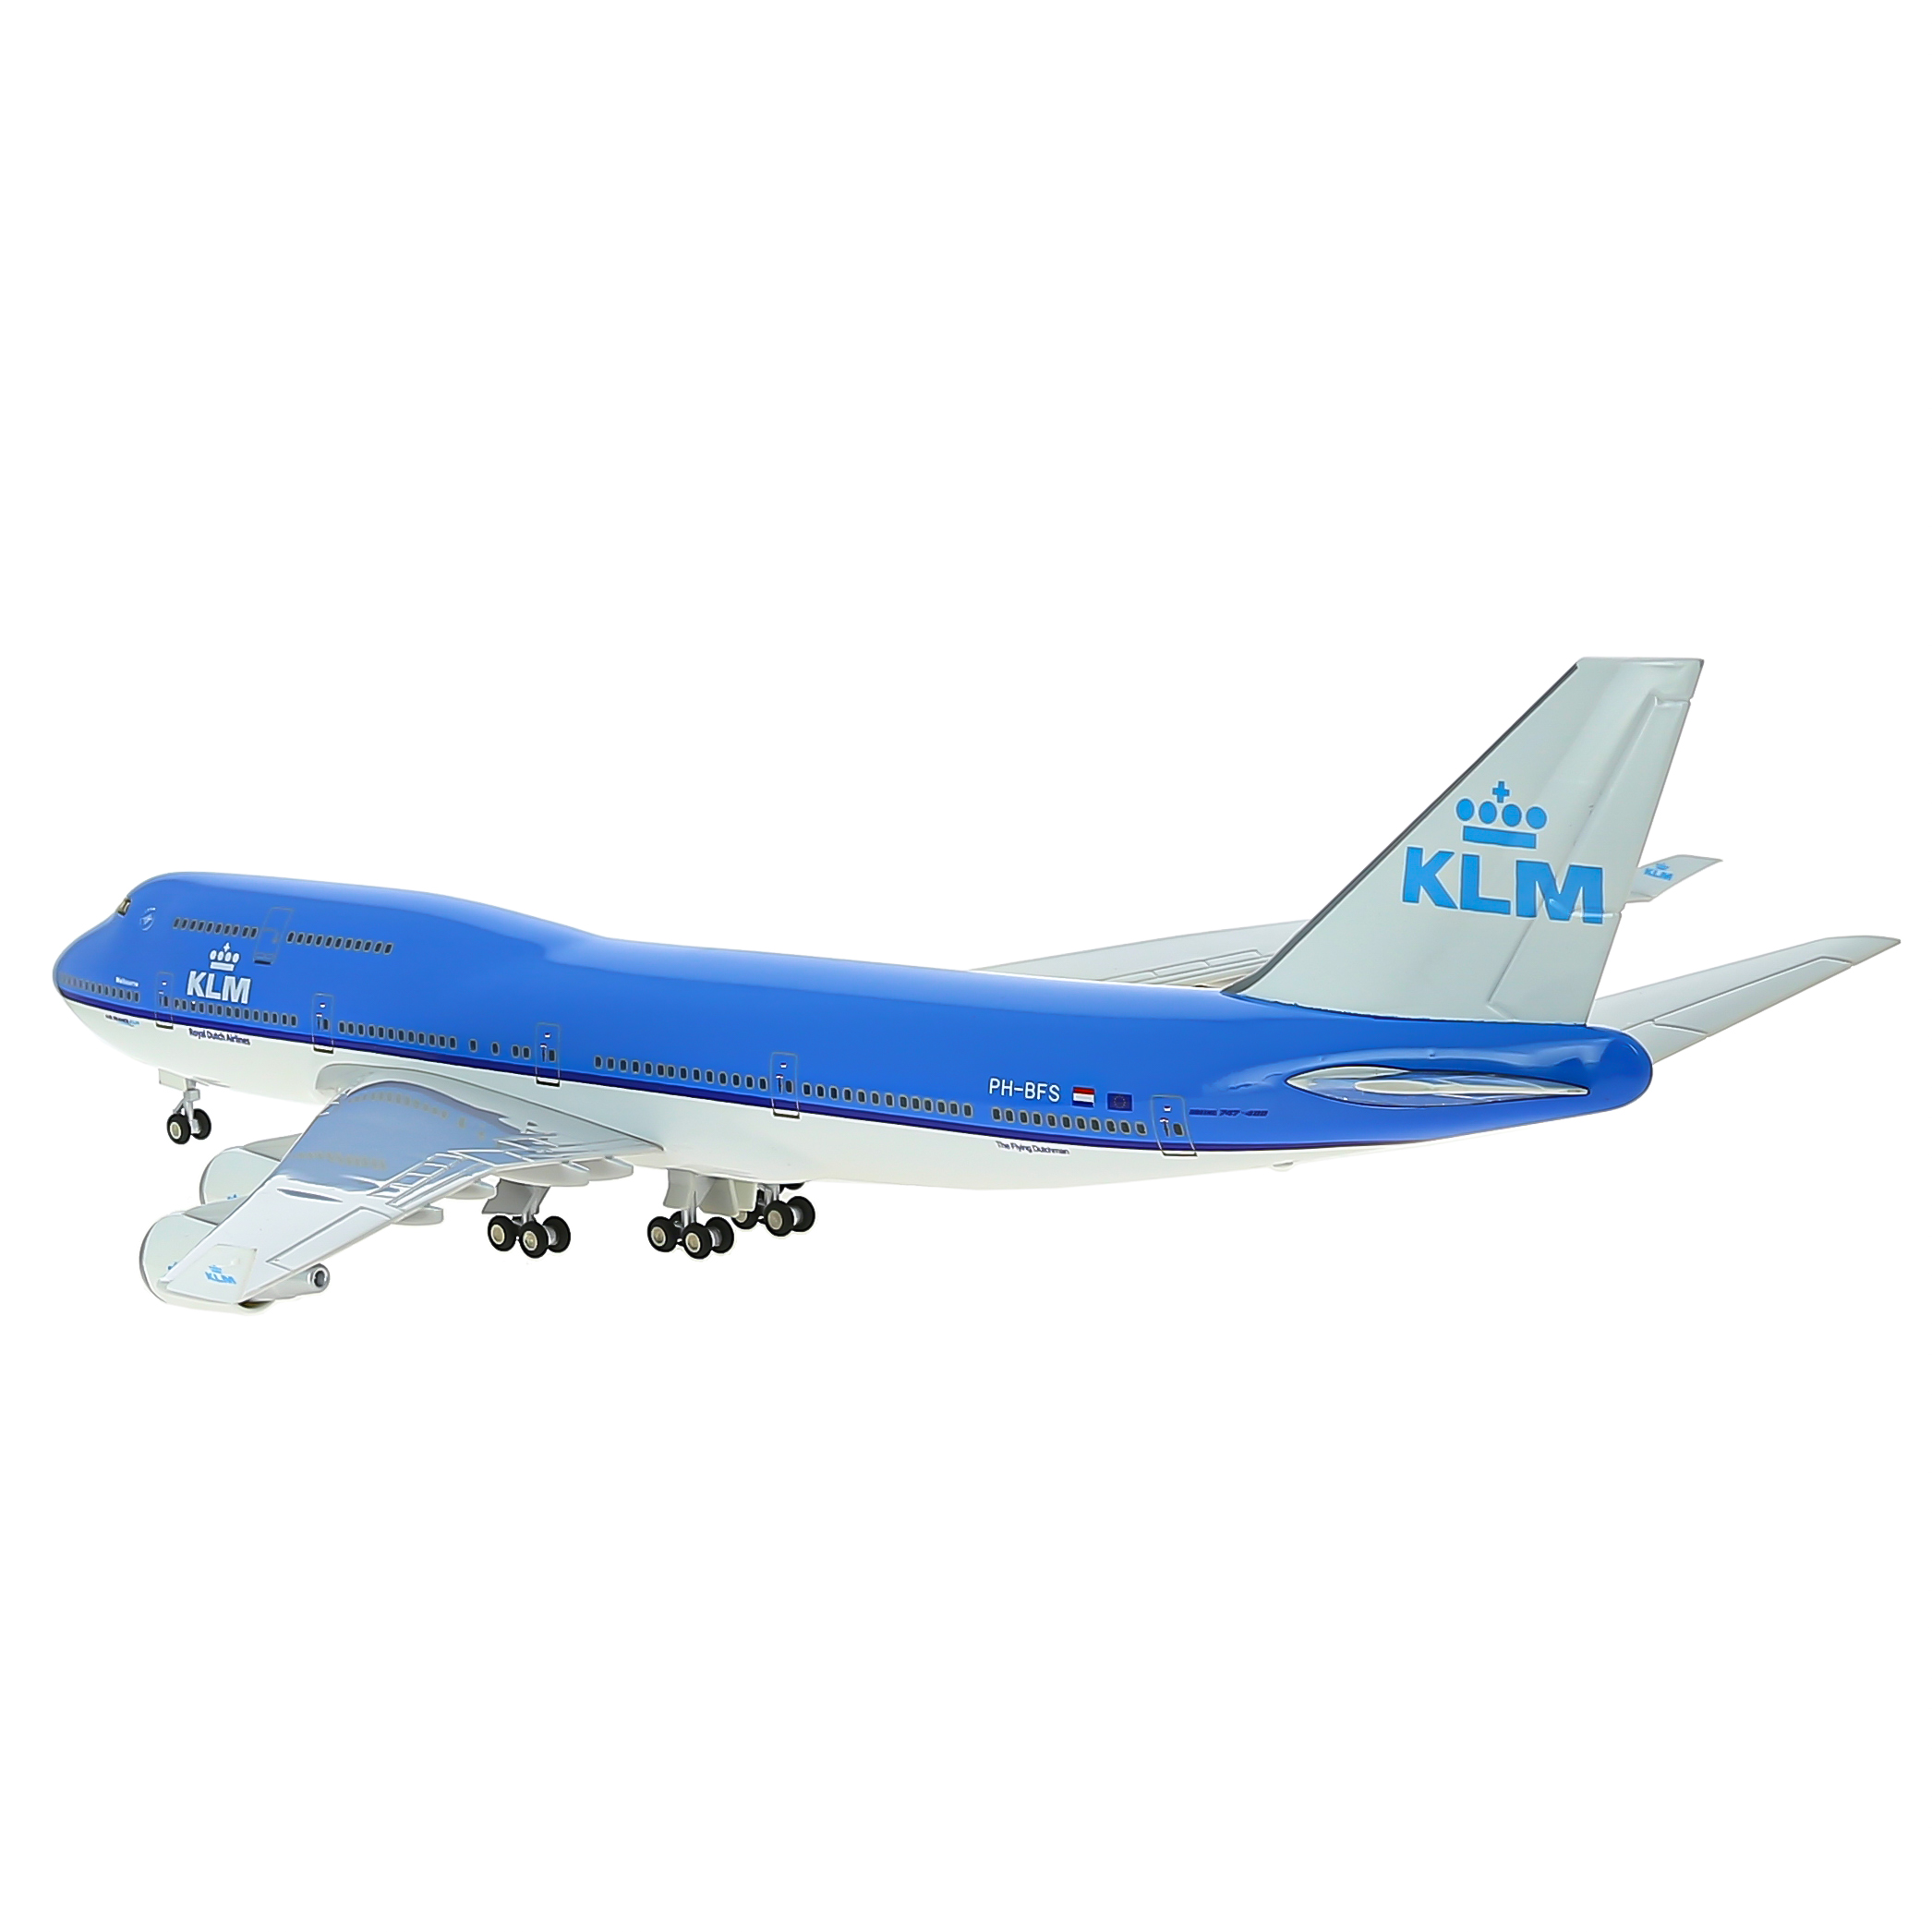     747  KLM,   .  47 . # 8 hobbyplus.ru